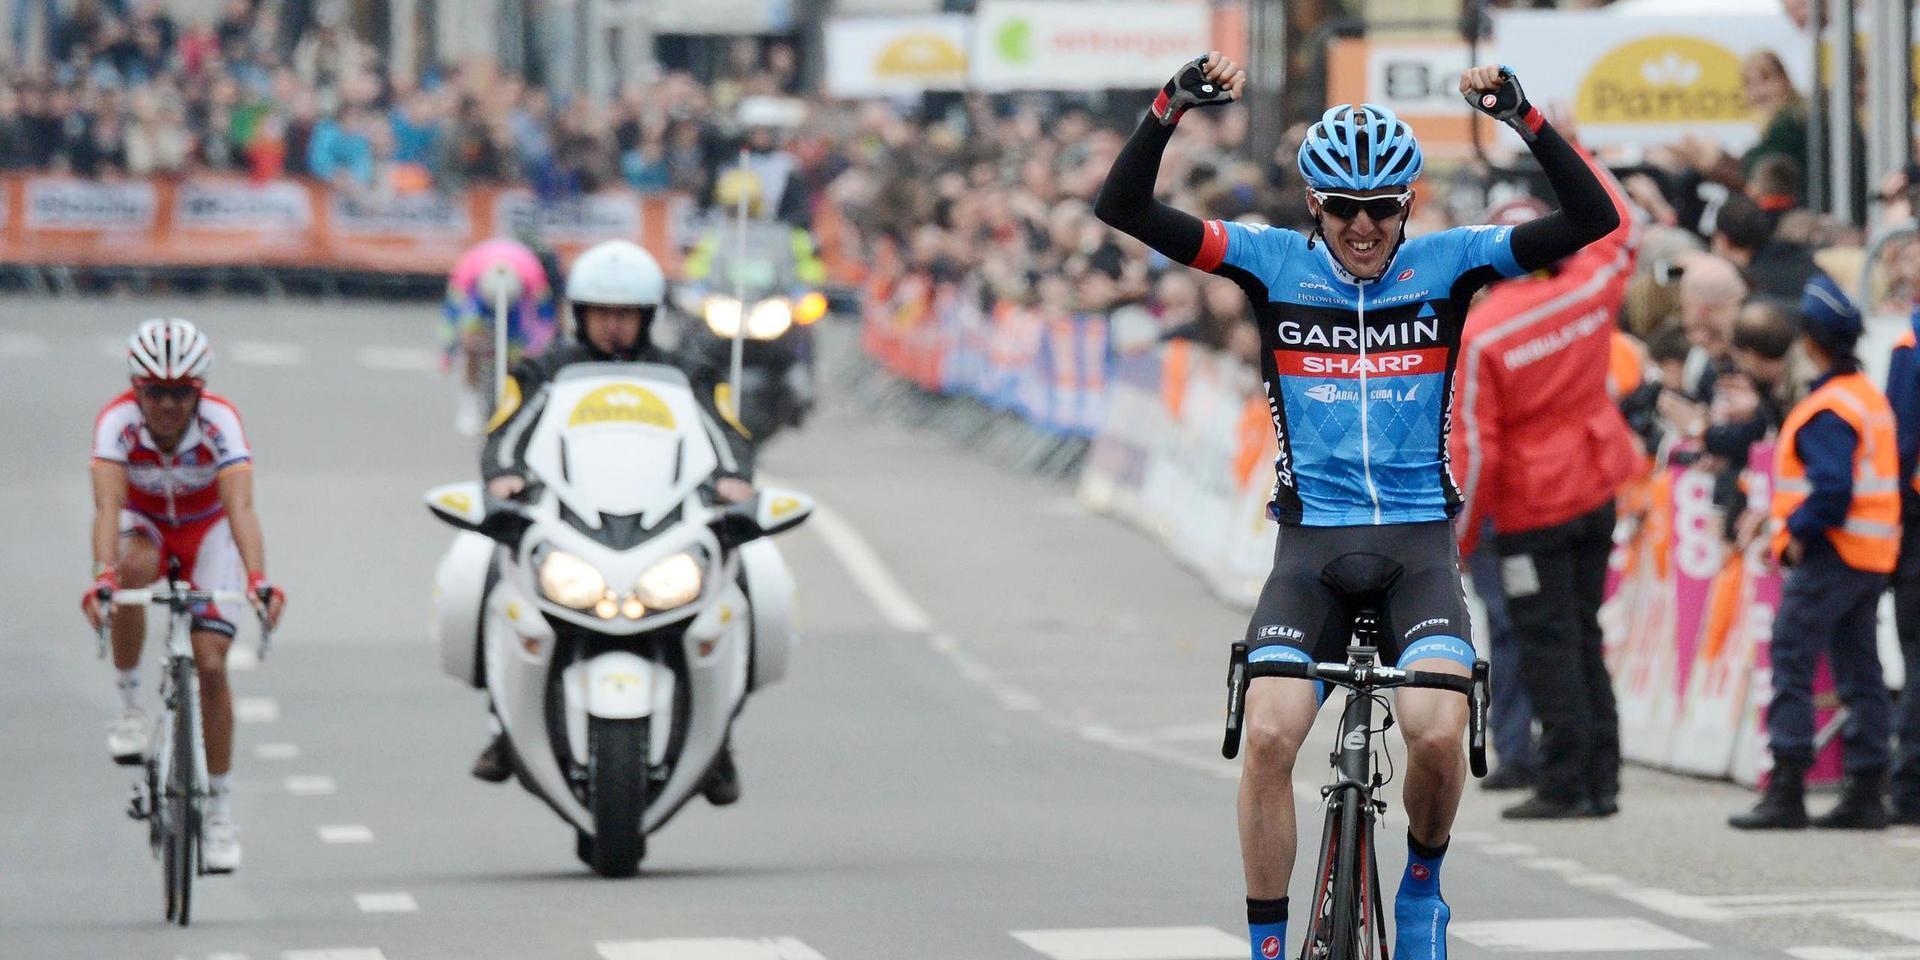 Garmin är en viktig aktör inom teknik för mätning, positionering och tidtagning vid sporter – som vid detta klassikerlopp i Liege i Belgien där cyklisten Daniel Martin cyklade i Garmin-Sharp-laget under 10-talet och som synes var först över mållinjen.